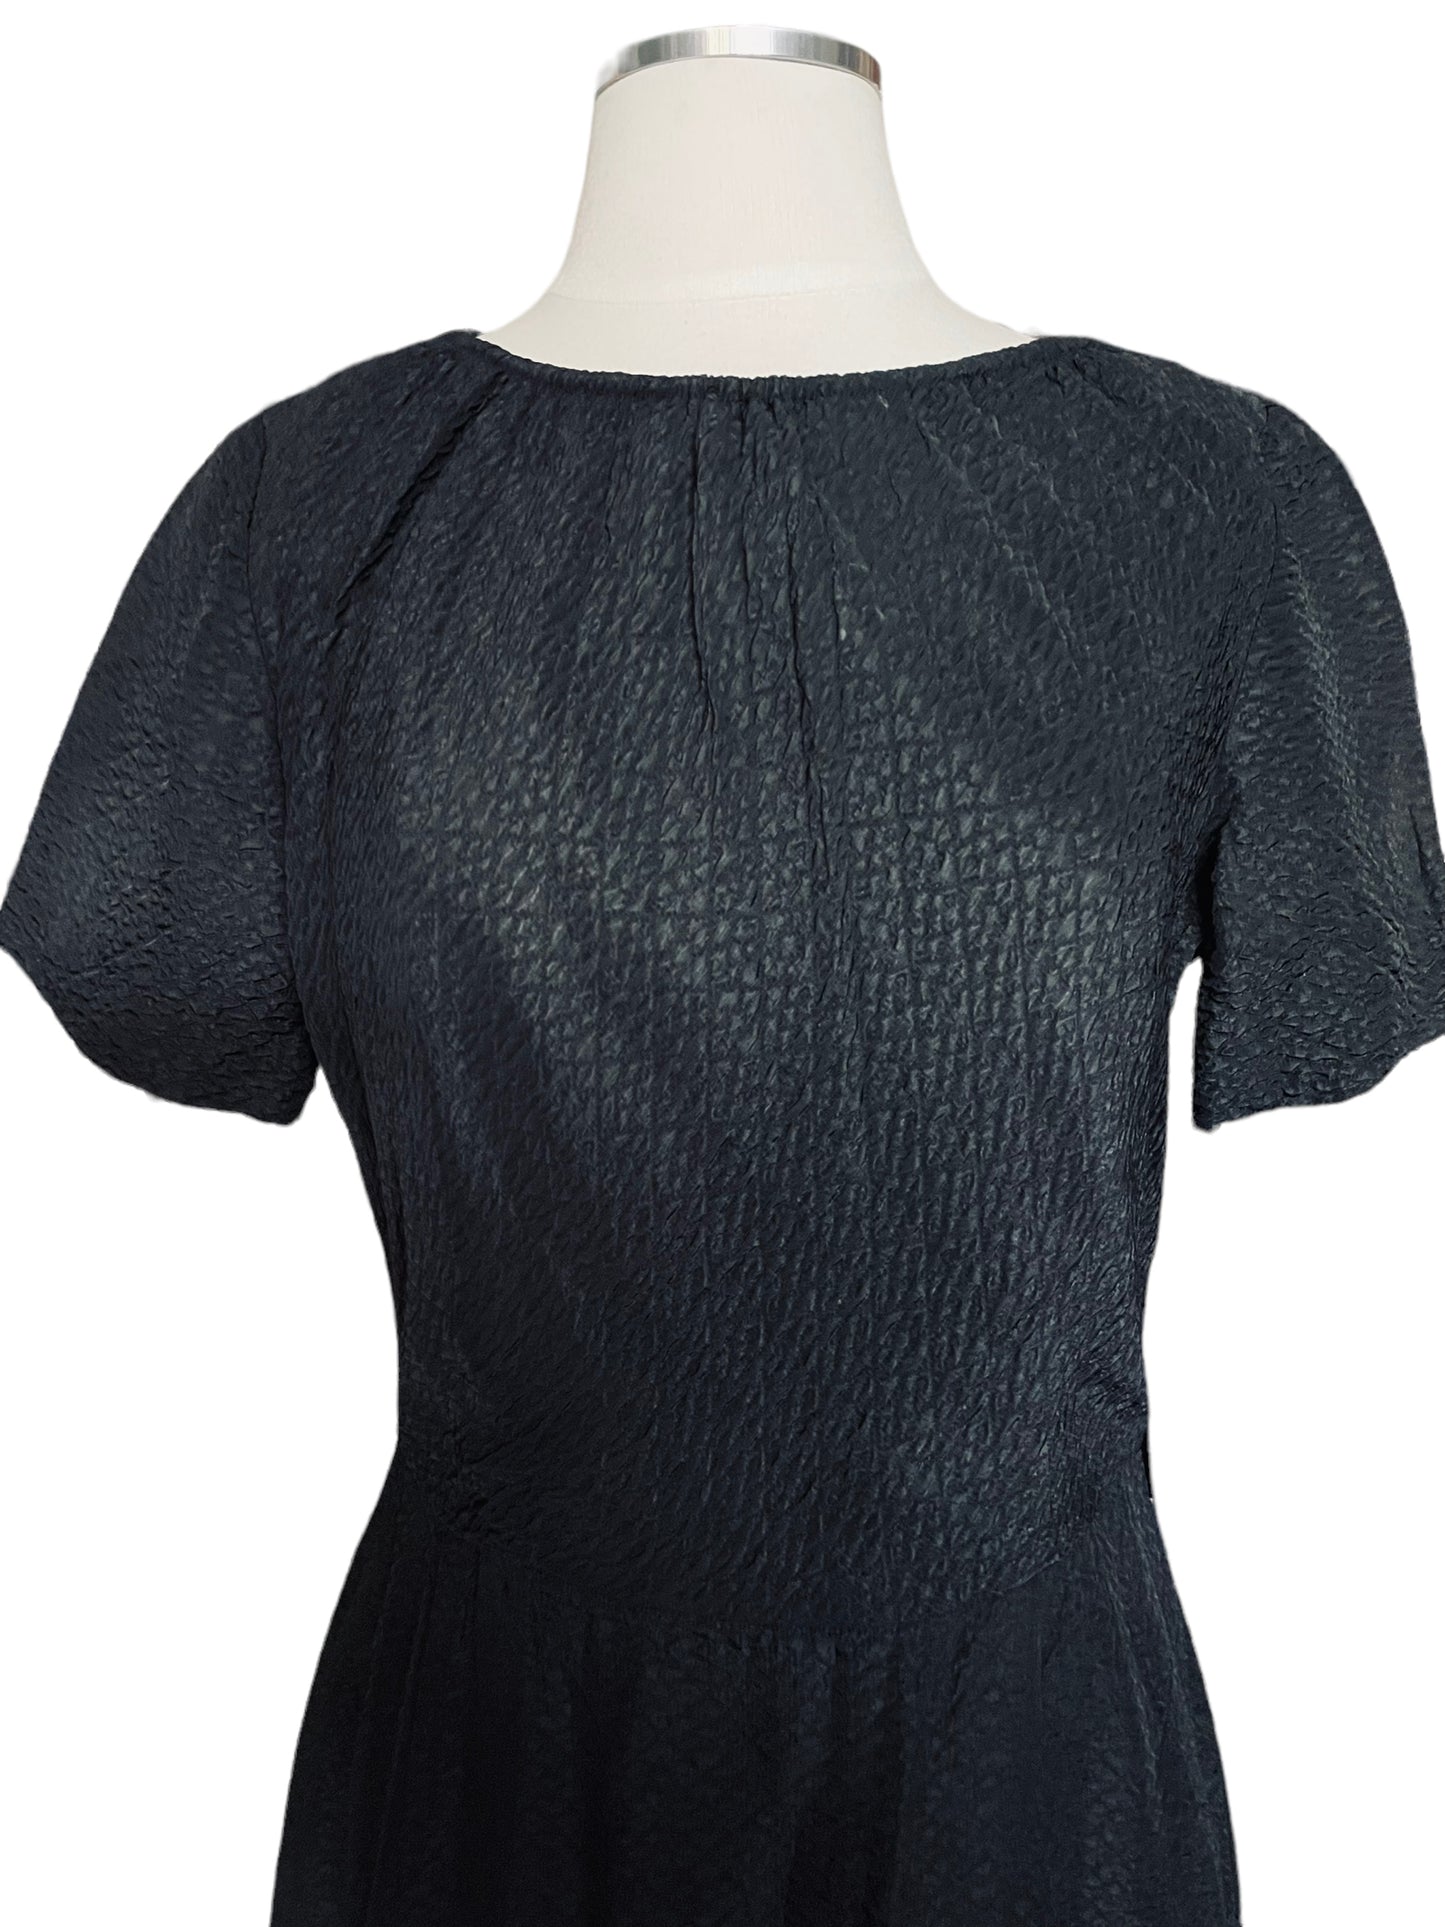 Vintage 1960s Black Textured Dress by Parkshire |  Barn Owl Vintage | Seattle Vintage Dresses